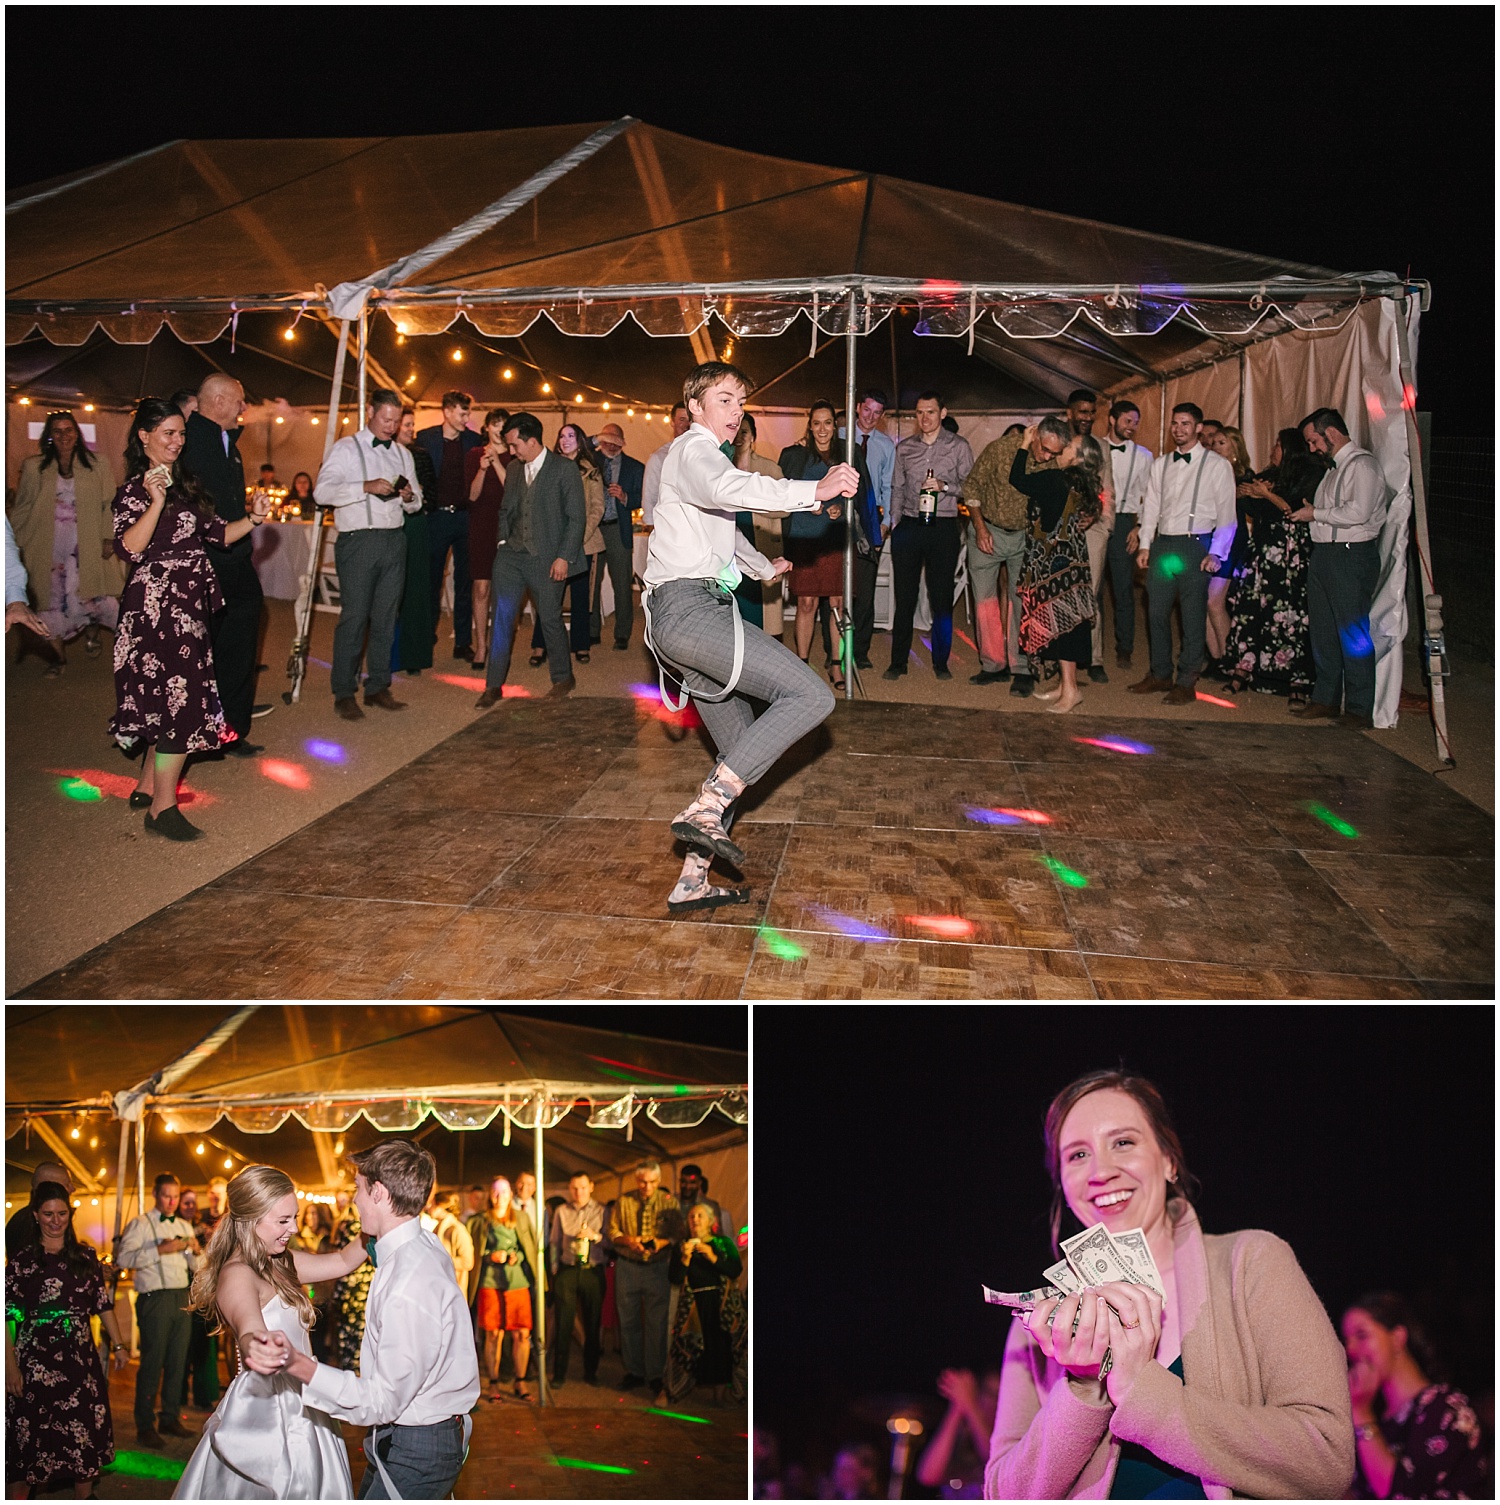 The Canadian money dance at backyard wedding in NE Albuquerque Acres